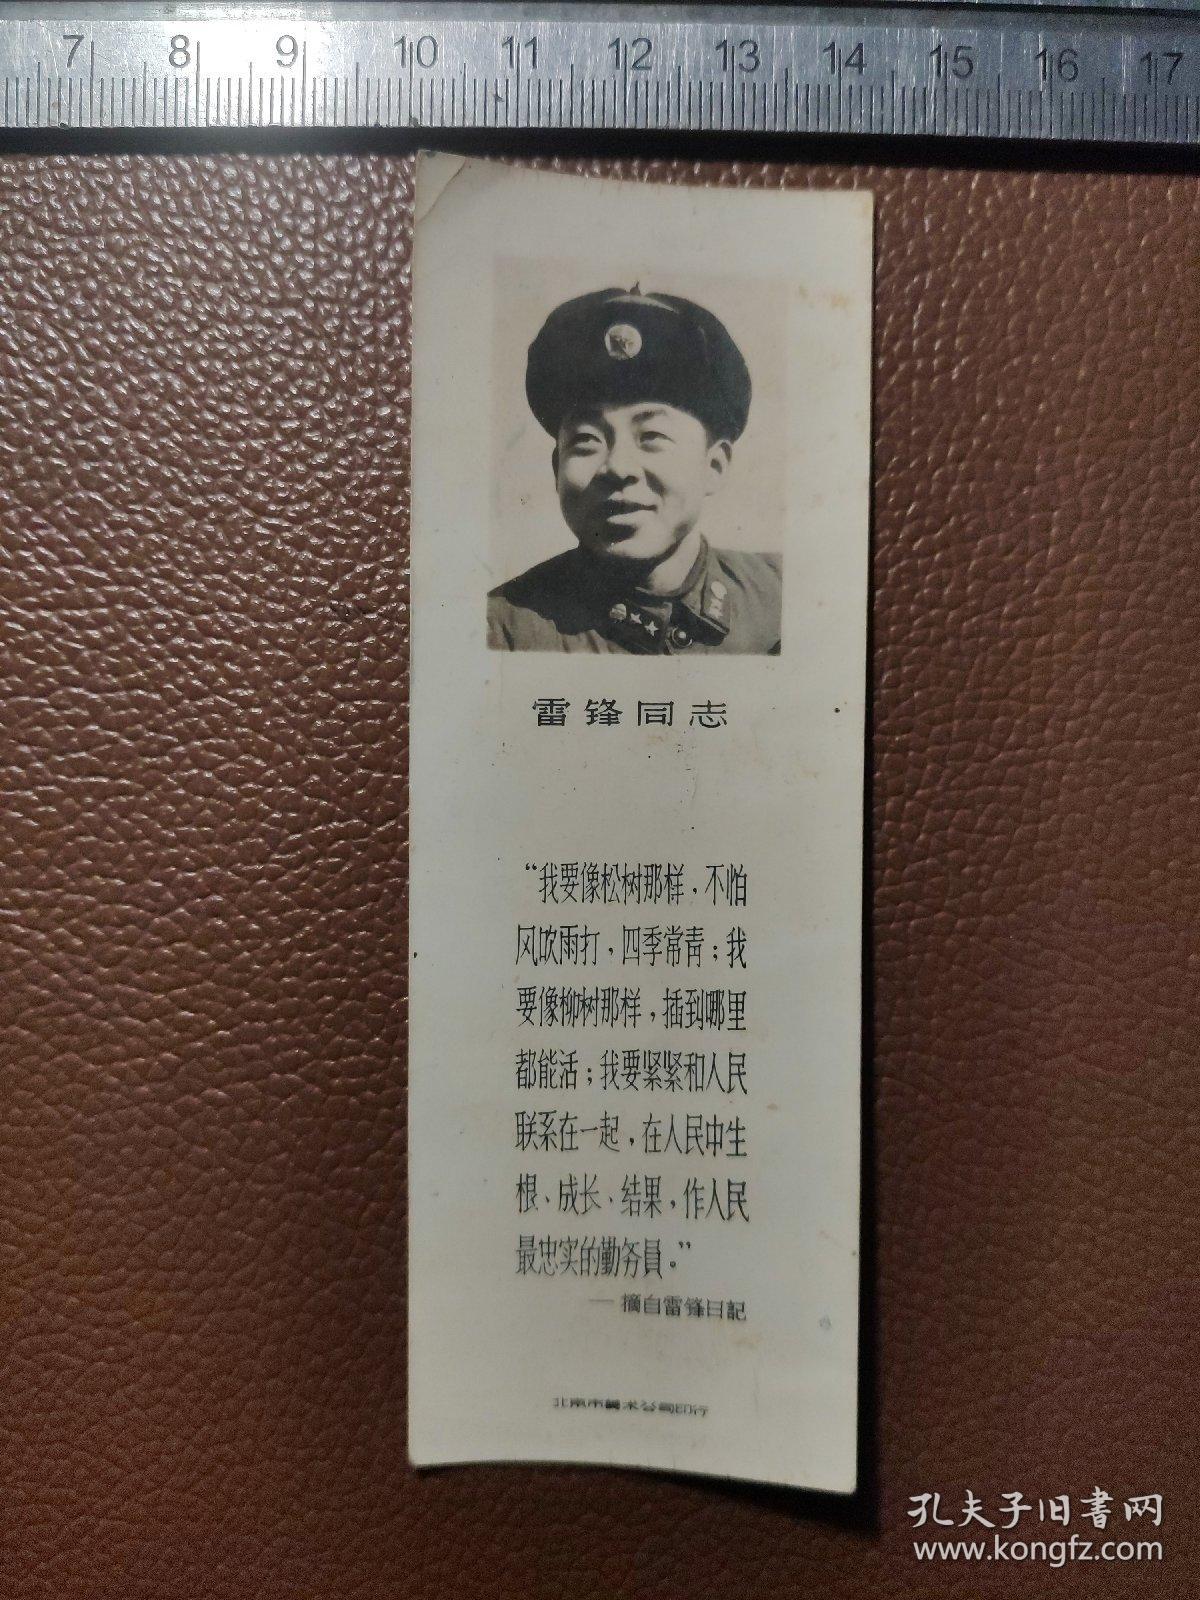 照片书签：雷锋同志的黑白照片式书签---北京市美术公司印行    竖版有雷锋同志照片     1张合售   文件盒十